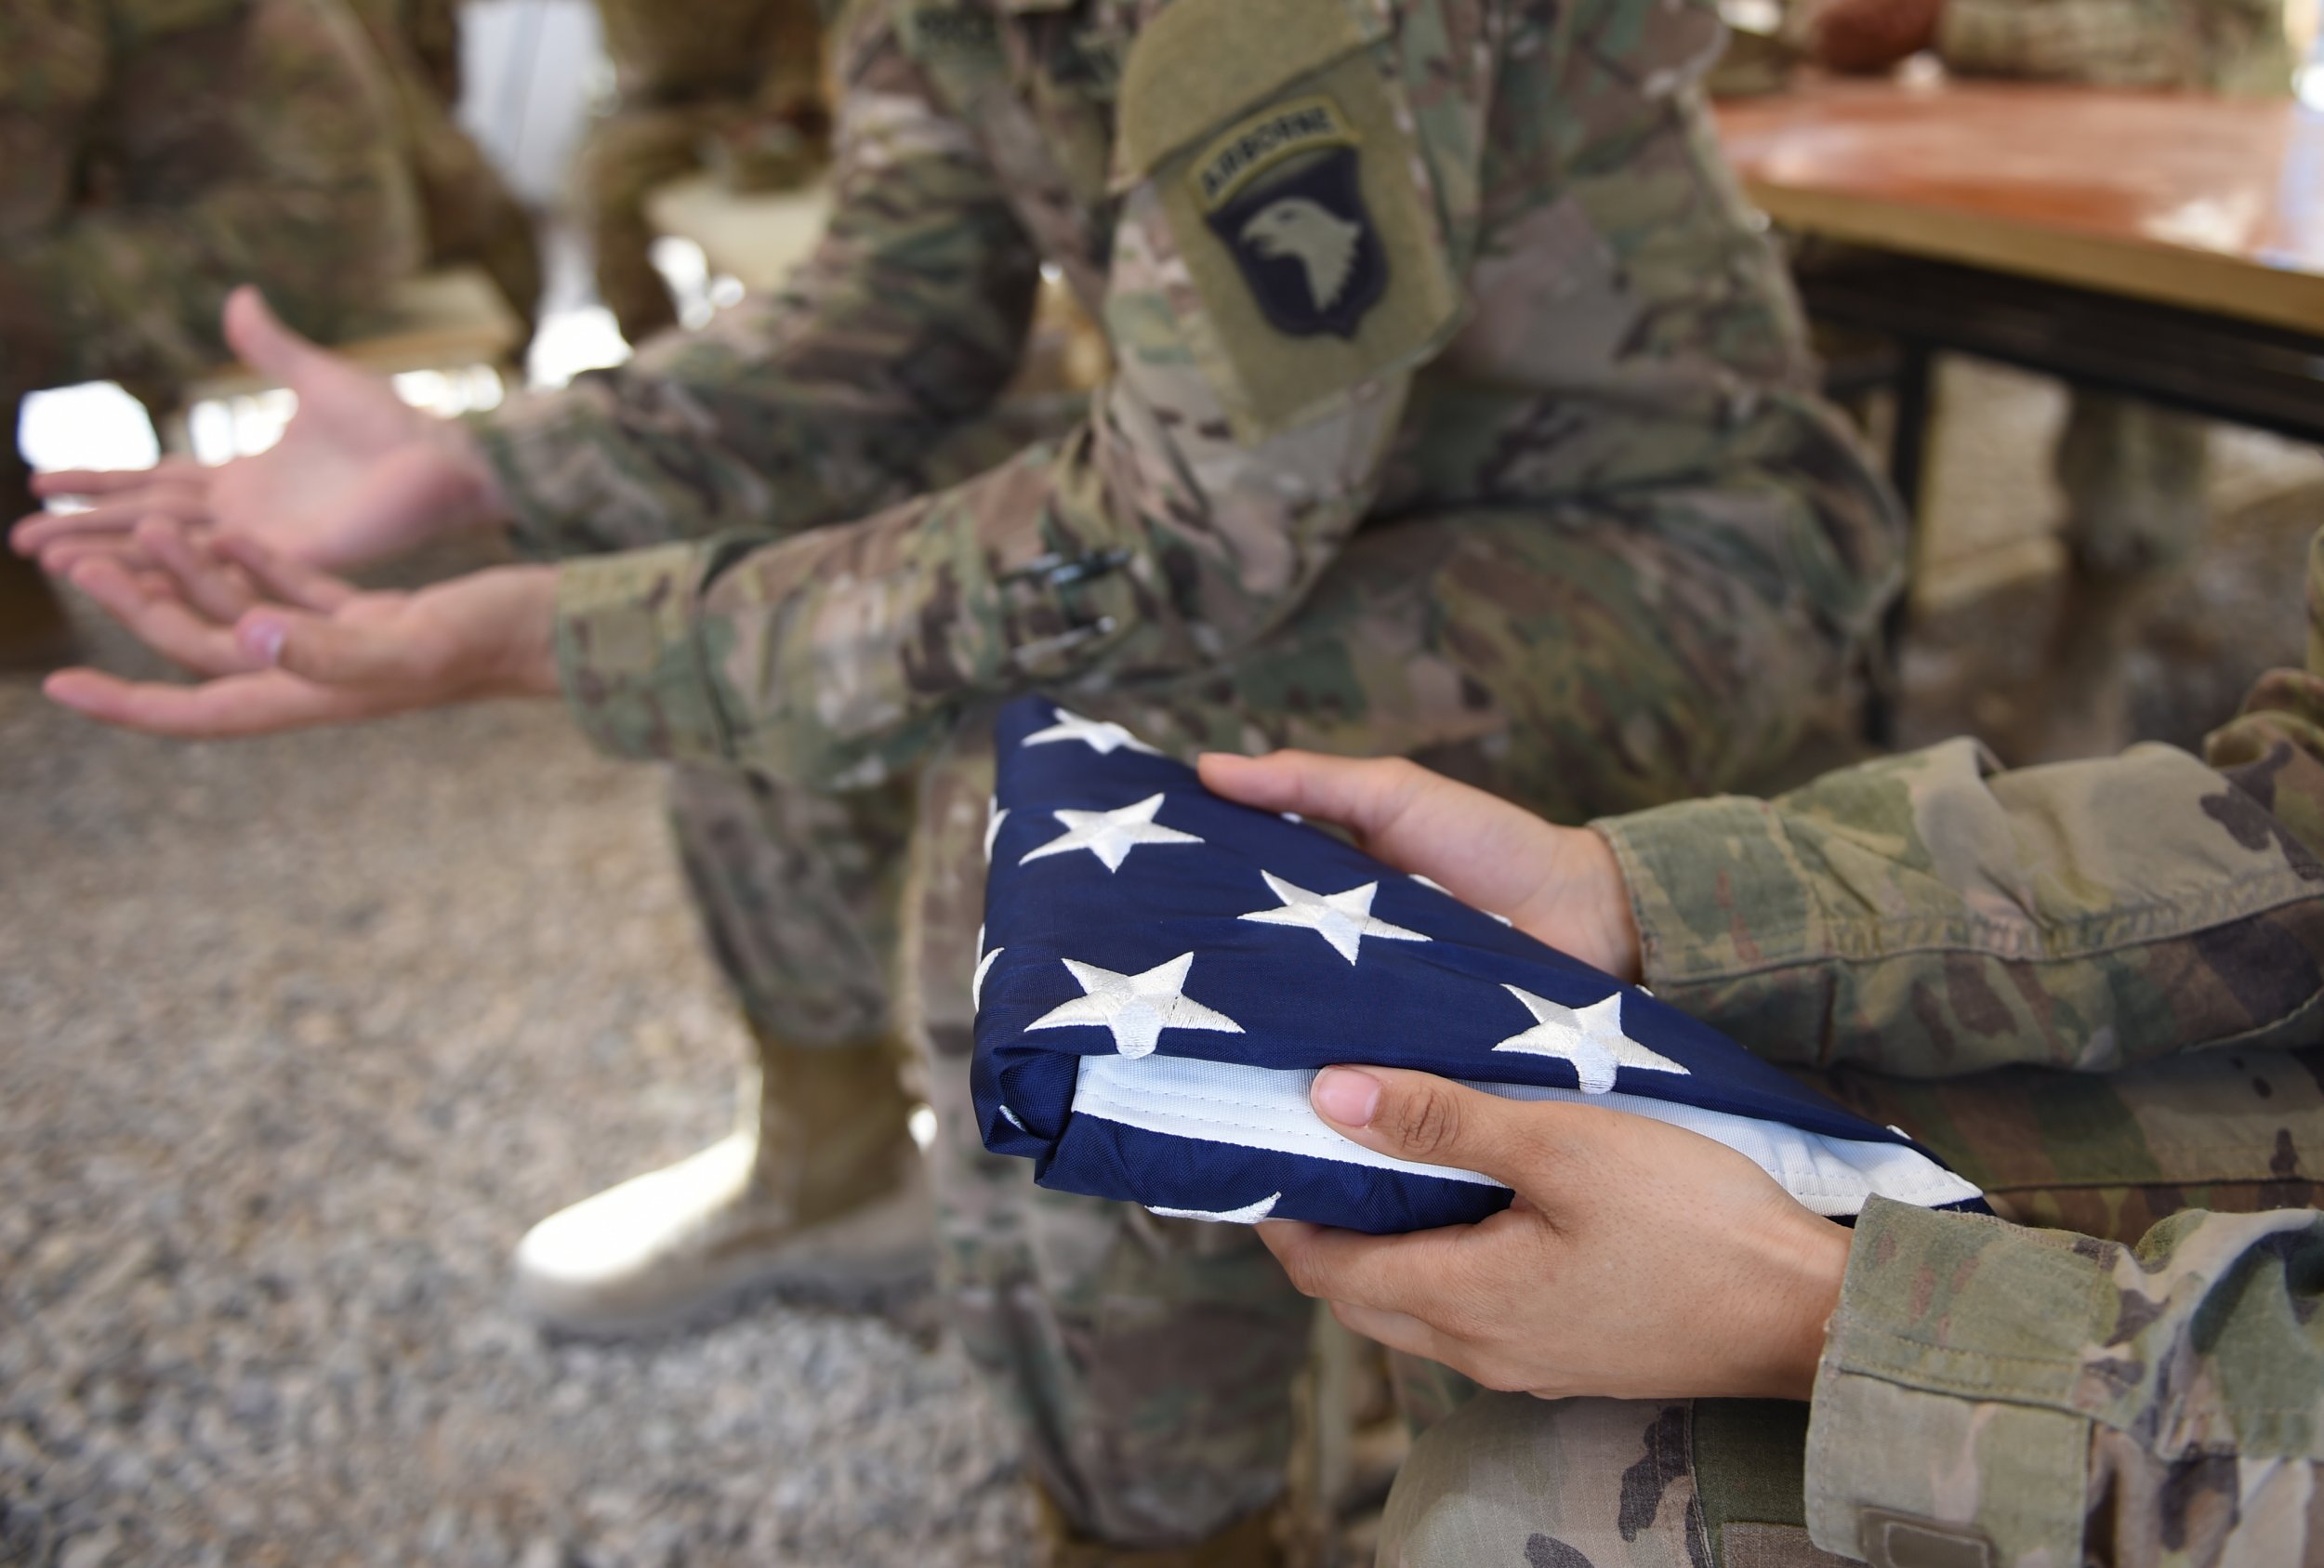 U.S. soldier Afghanistan